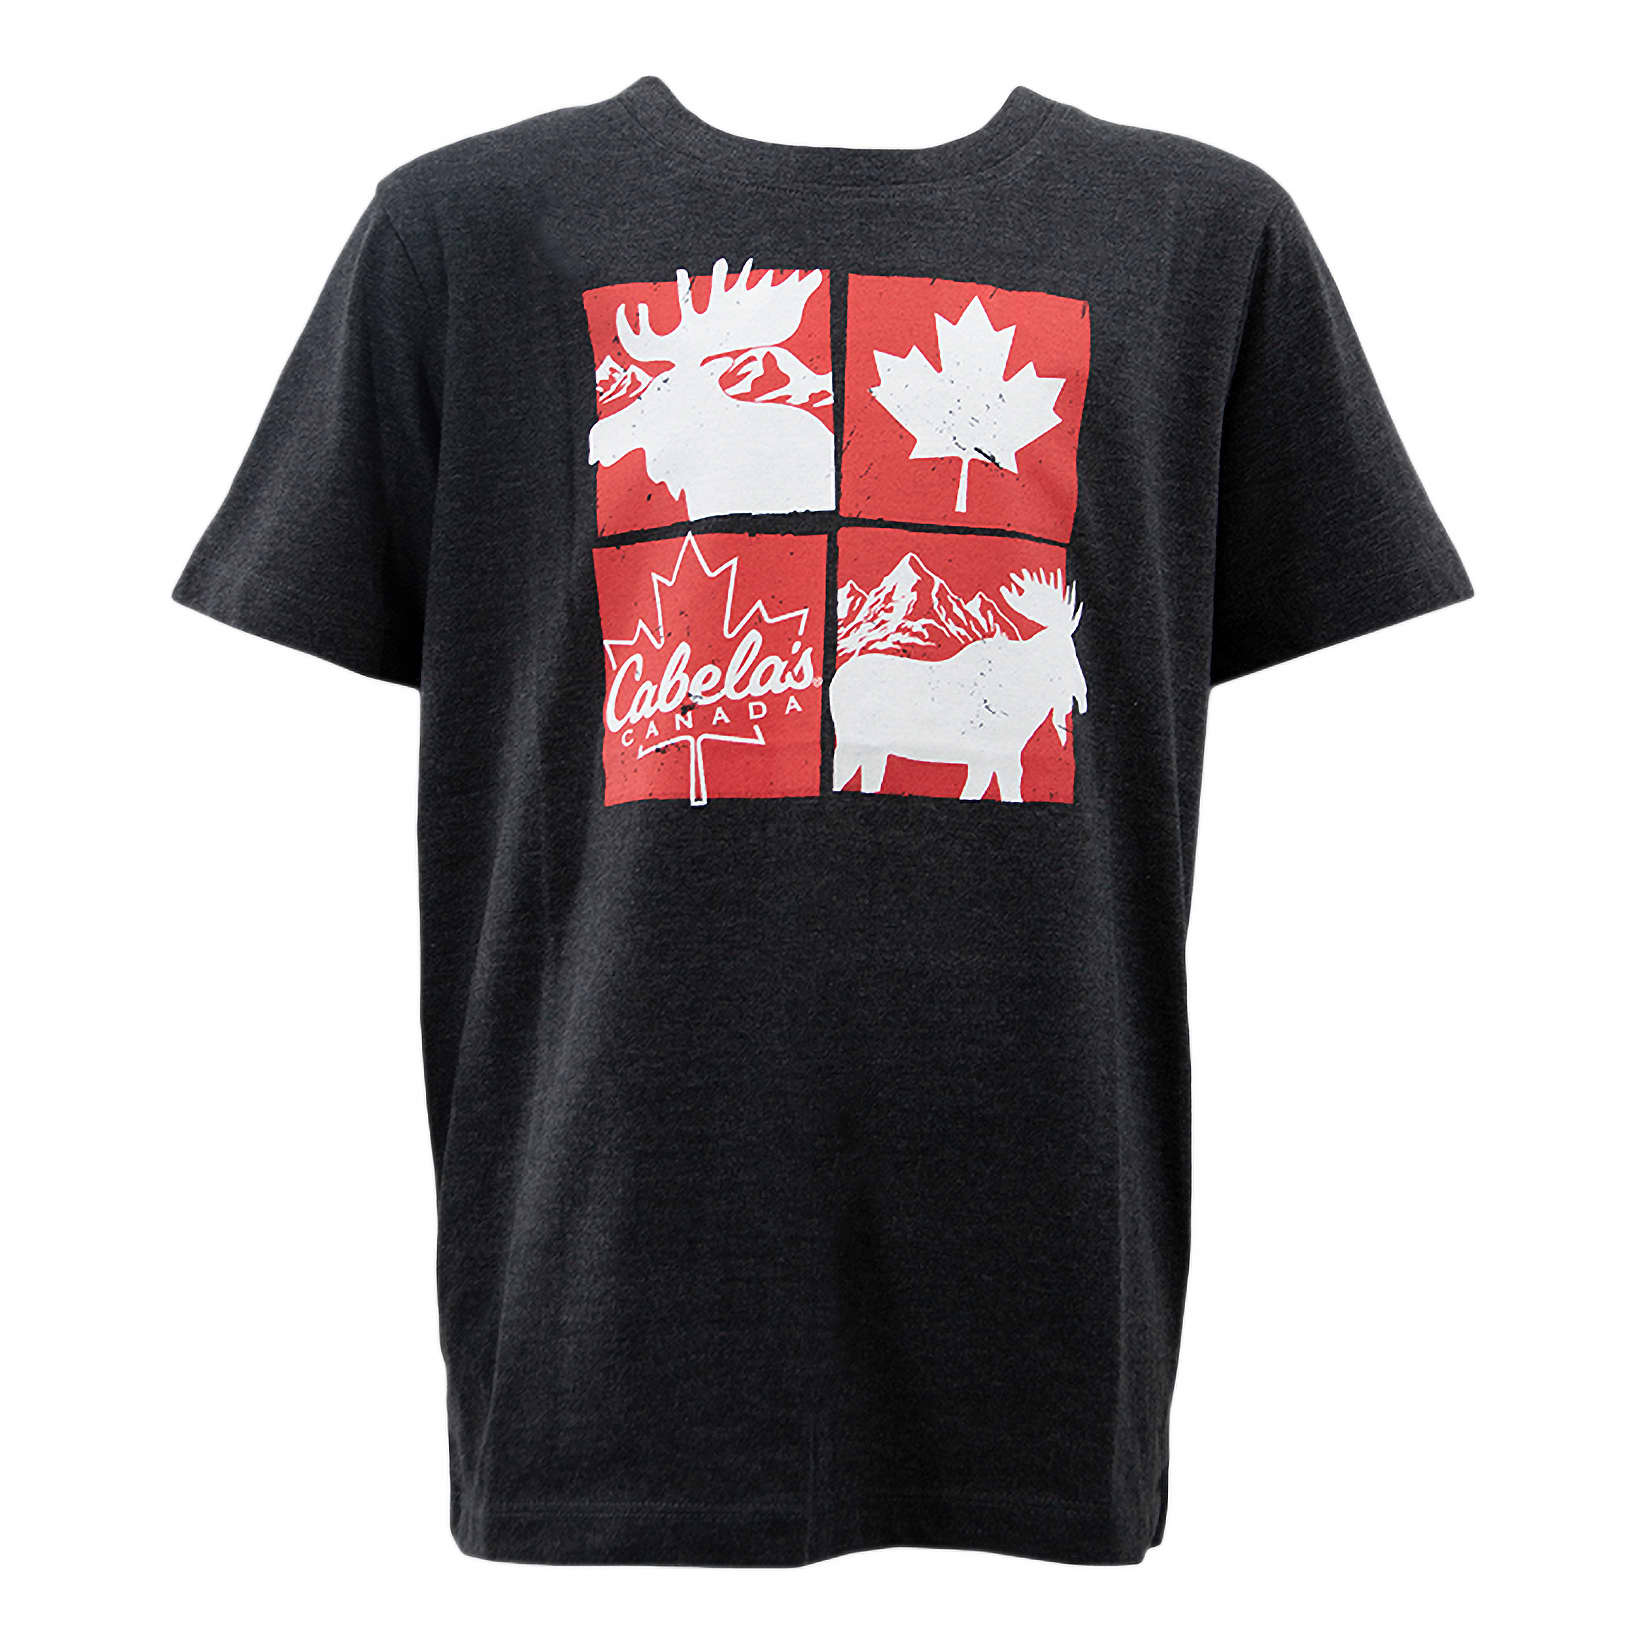 Cabela's Youth Canada Short-Sleeve T-Shirt